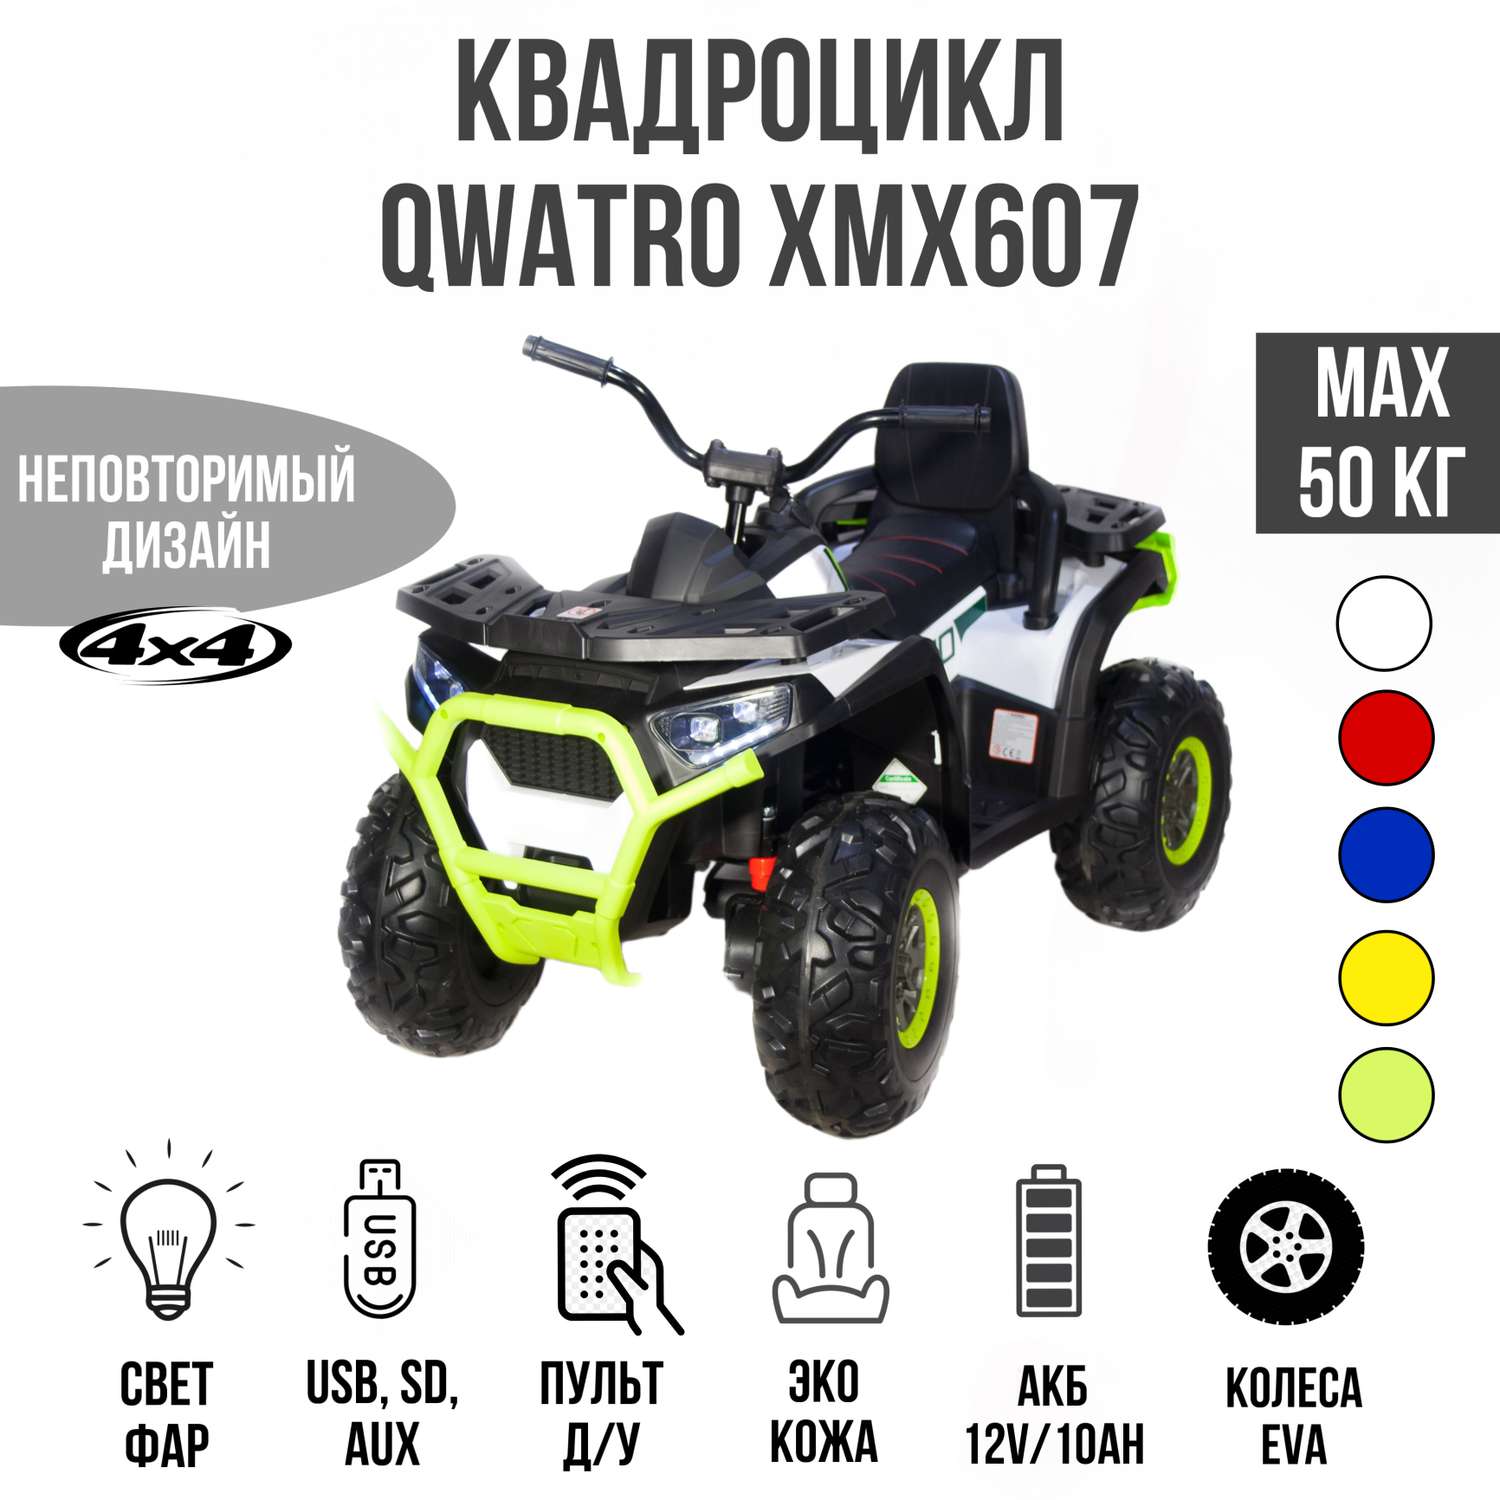 Электромобиль TOYLAND Квадроцикл Qwatro XMX607 4х4 белый - фото 1